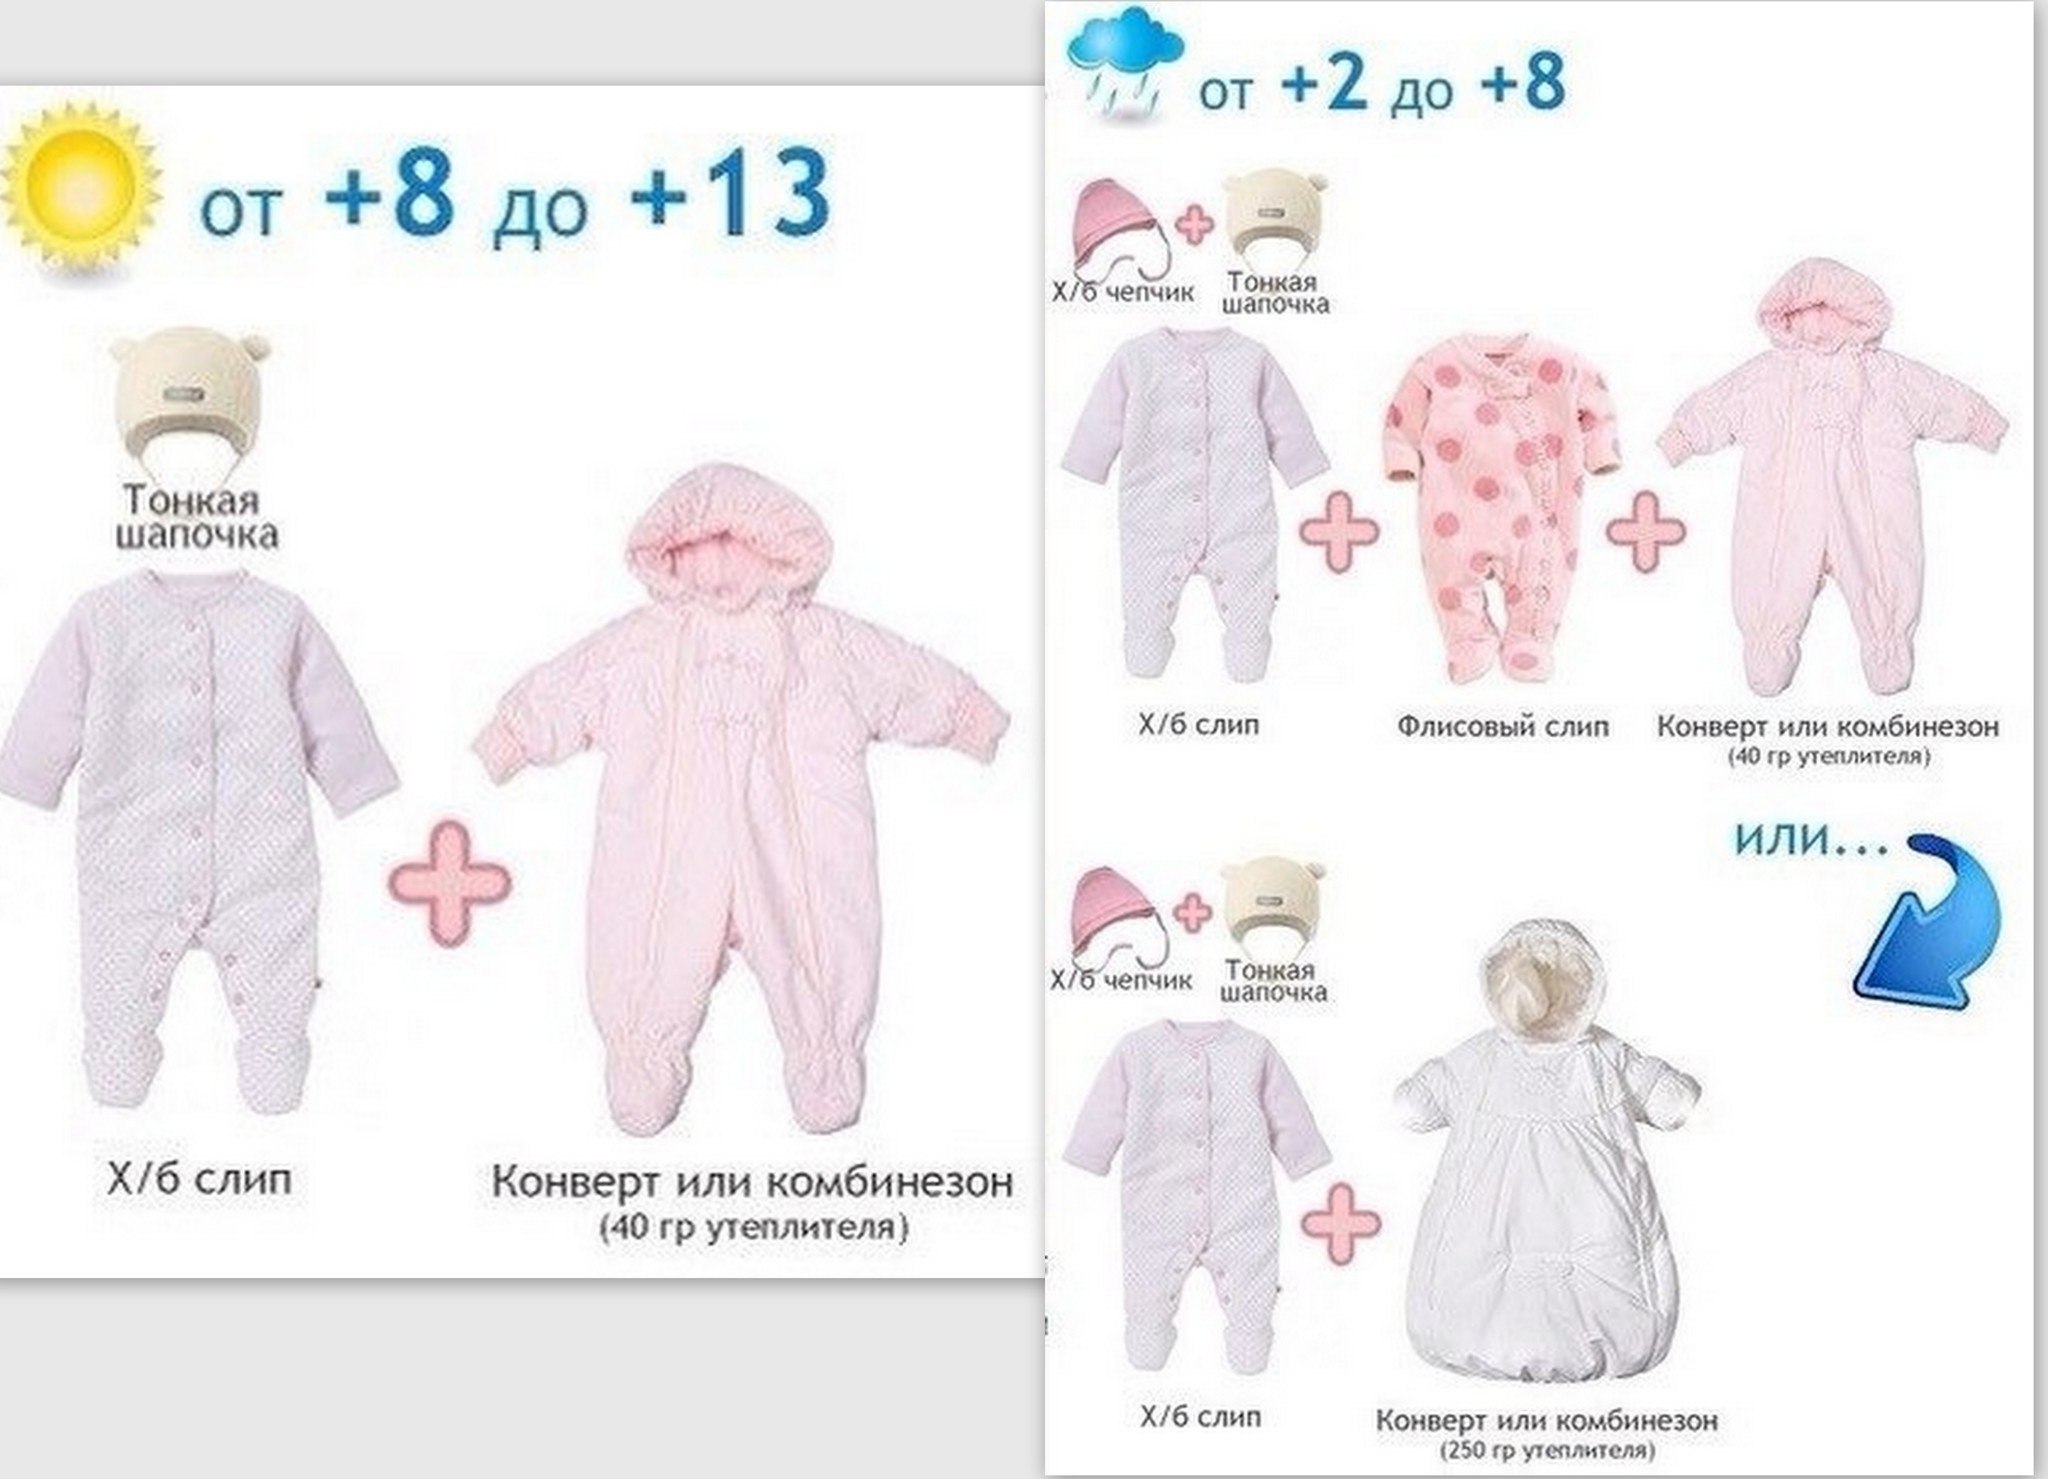 Как одевать грудничка в 10. Как одеть грудничка в +10 +15. 8 Градусов как одеть грудничка. Как одеть ребенка. Одежда для новорожденных по градусам.